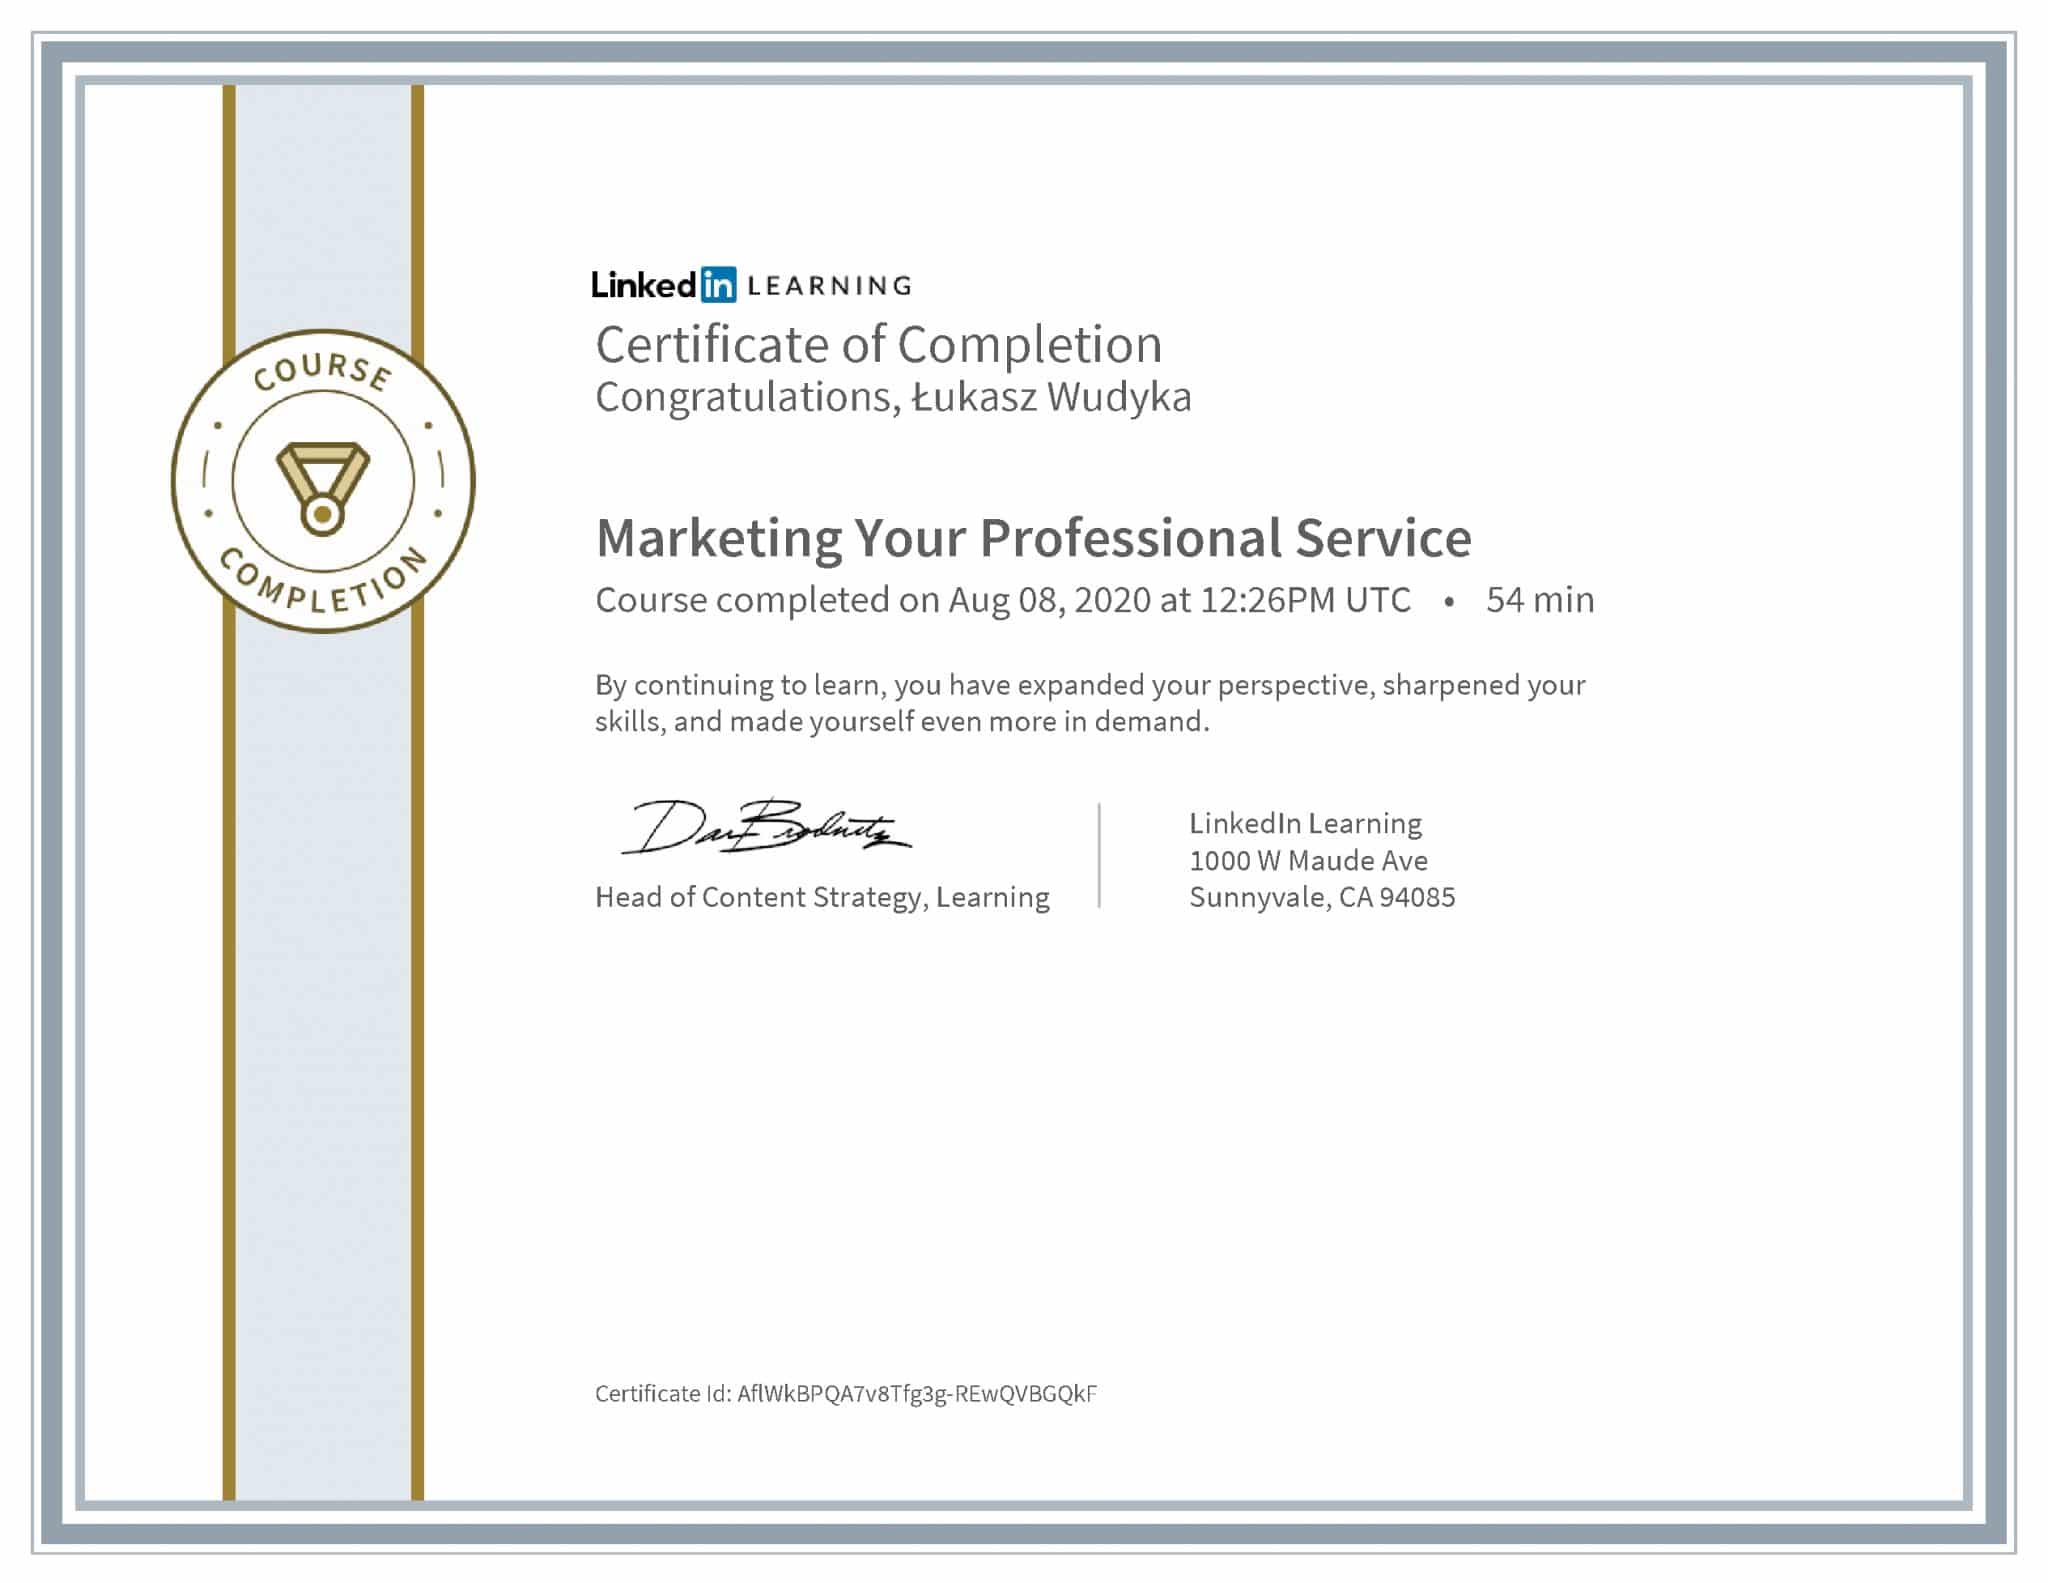 Łukasz Wudyka certyfikat LinkedIn Marketing Your Professional Service